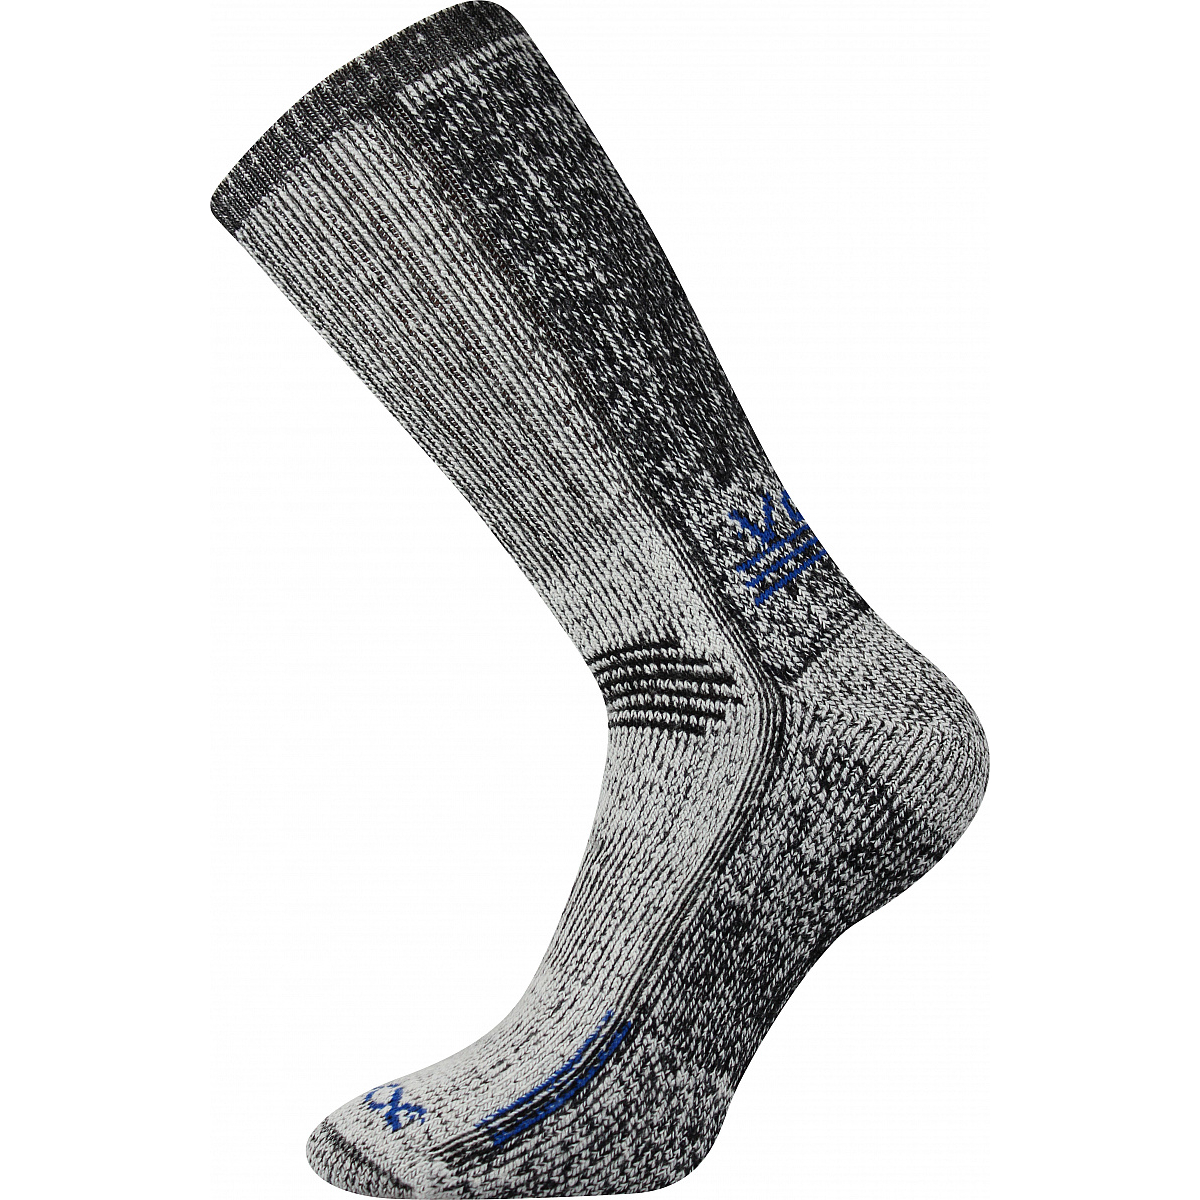 Extra teplé vlněné ponožky Voxx Orbit - šedé-modré, 43-46